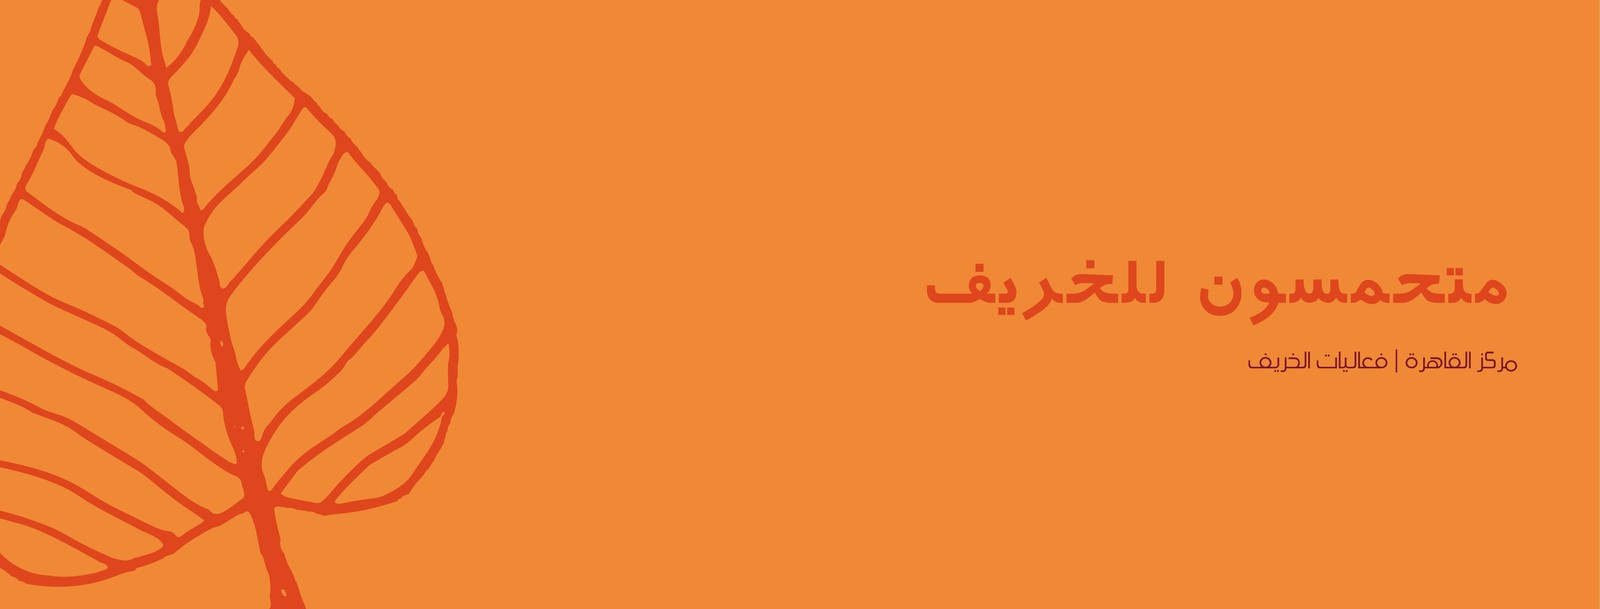 غلاف فيسبوك برتقالي ورقة خريفية مرسومة باليد